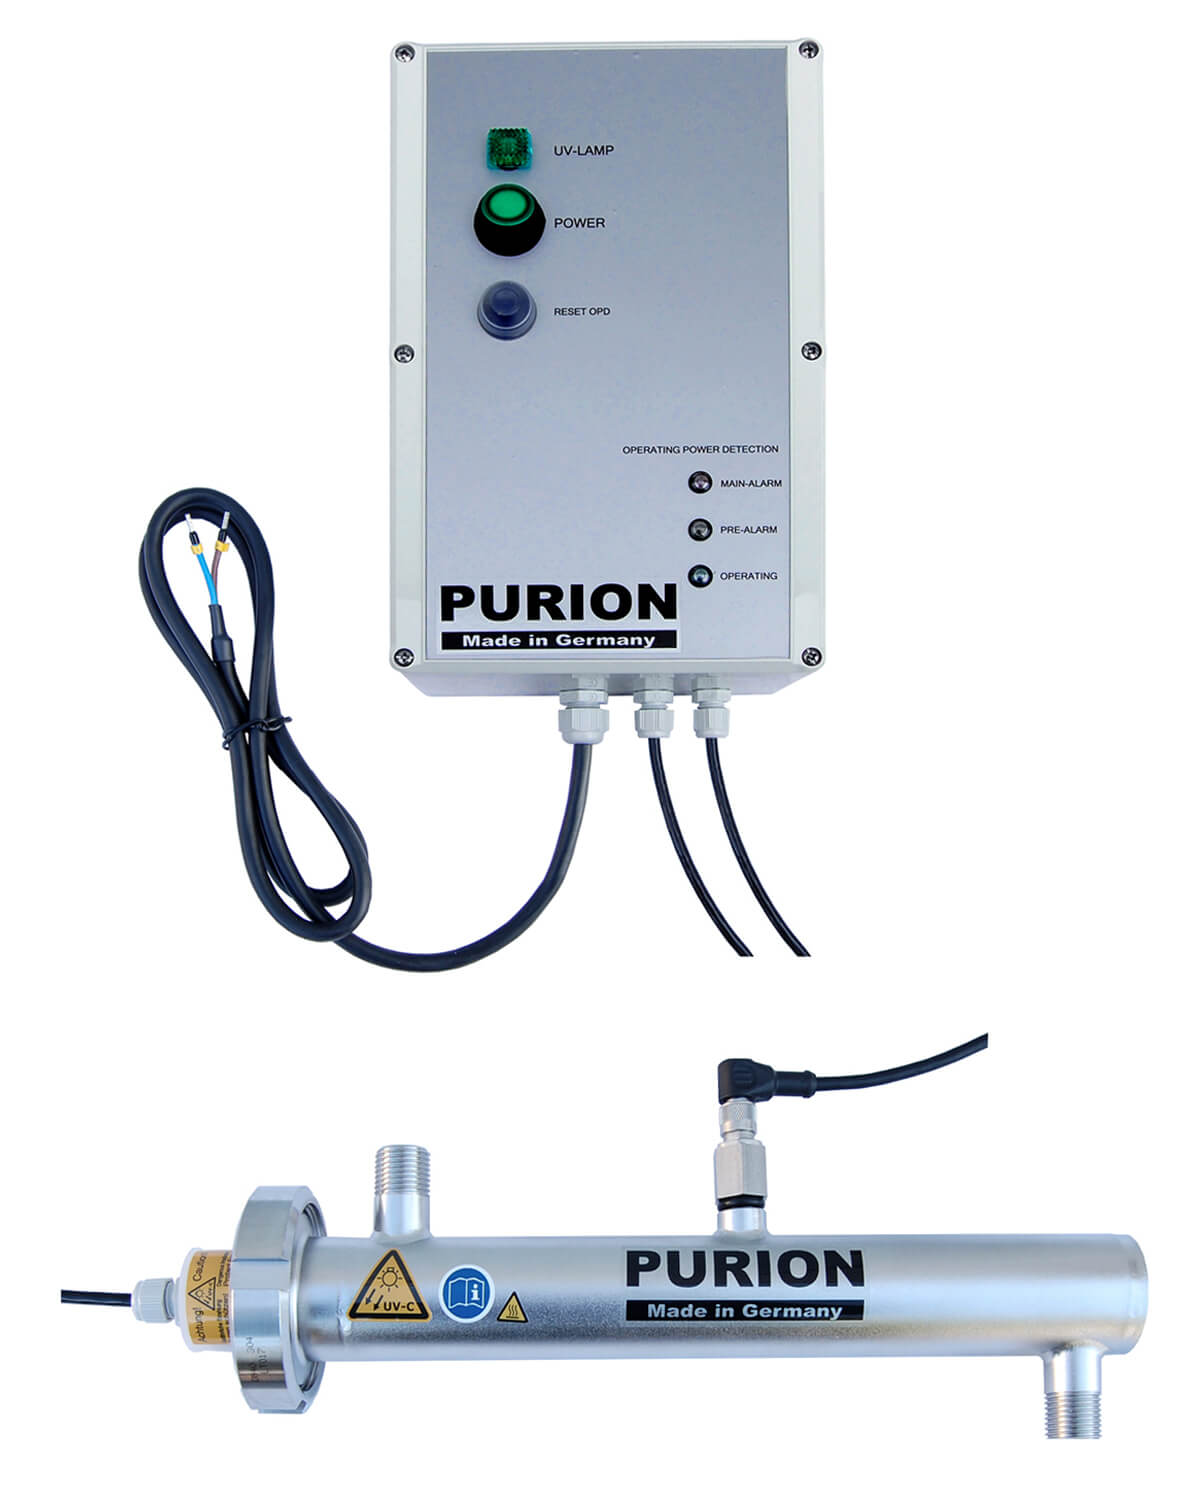 Die Purion GmbH ist ein führender Anbieter von PURION 500 12 V/24 V DC OPD Trinkwasseraufbereitungslösungen und gewährleistet eine hohe Trinkwasserqualität durch unsere hochmoderne Desinfektionsanlage.